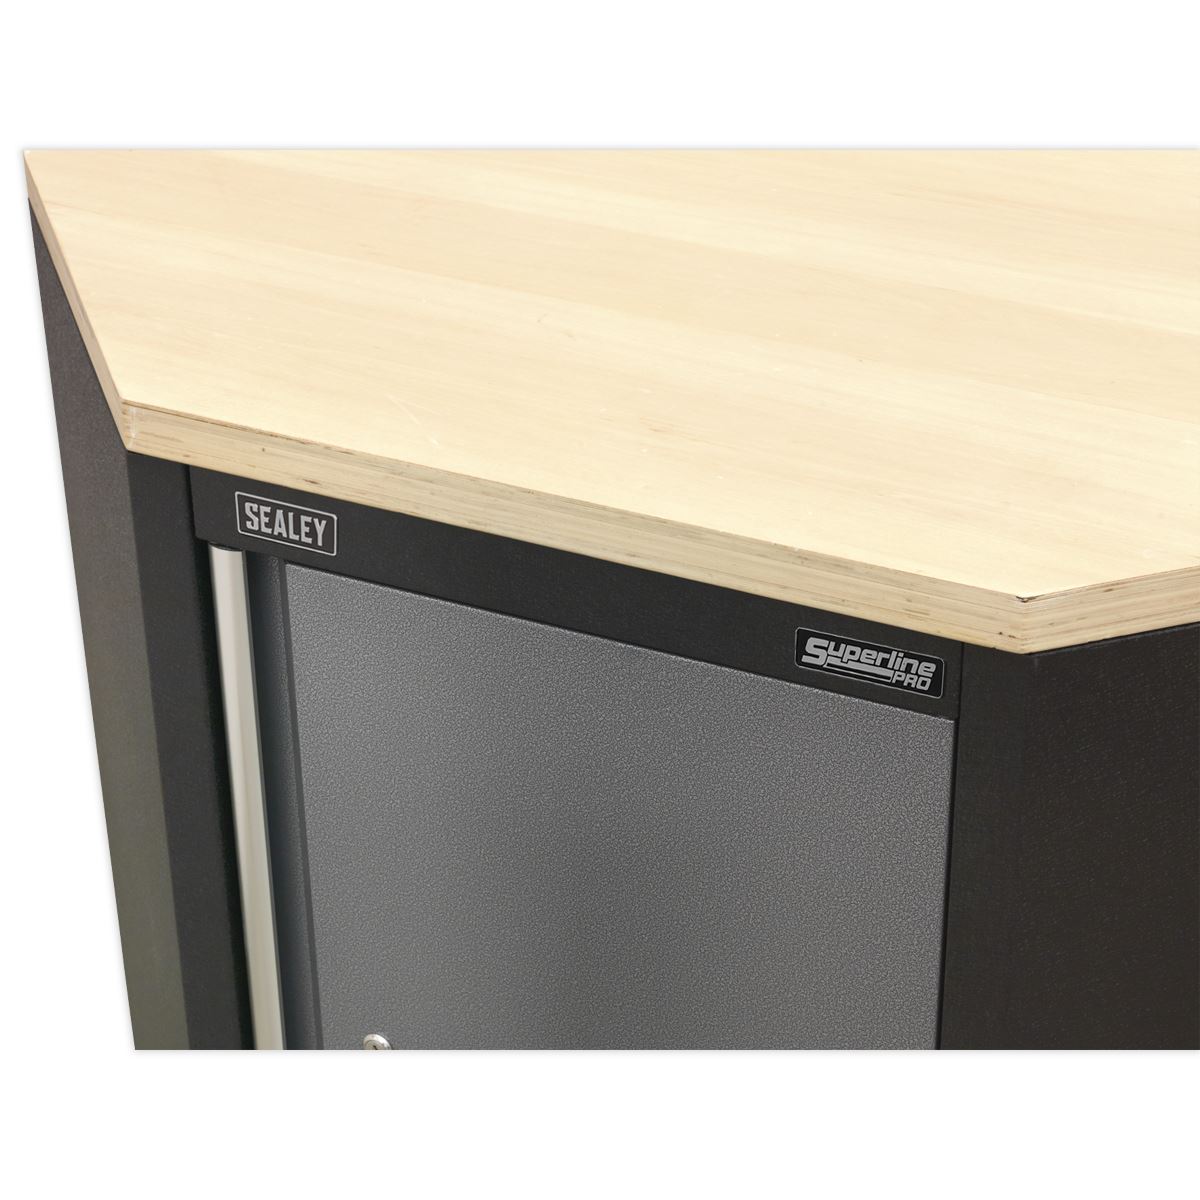 Sealey Superline Pro Pressed Wood Worktop for Modular Corner Cabinet 865mm